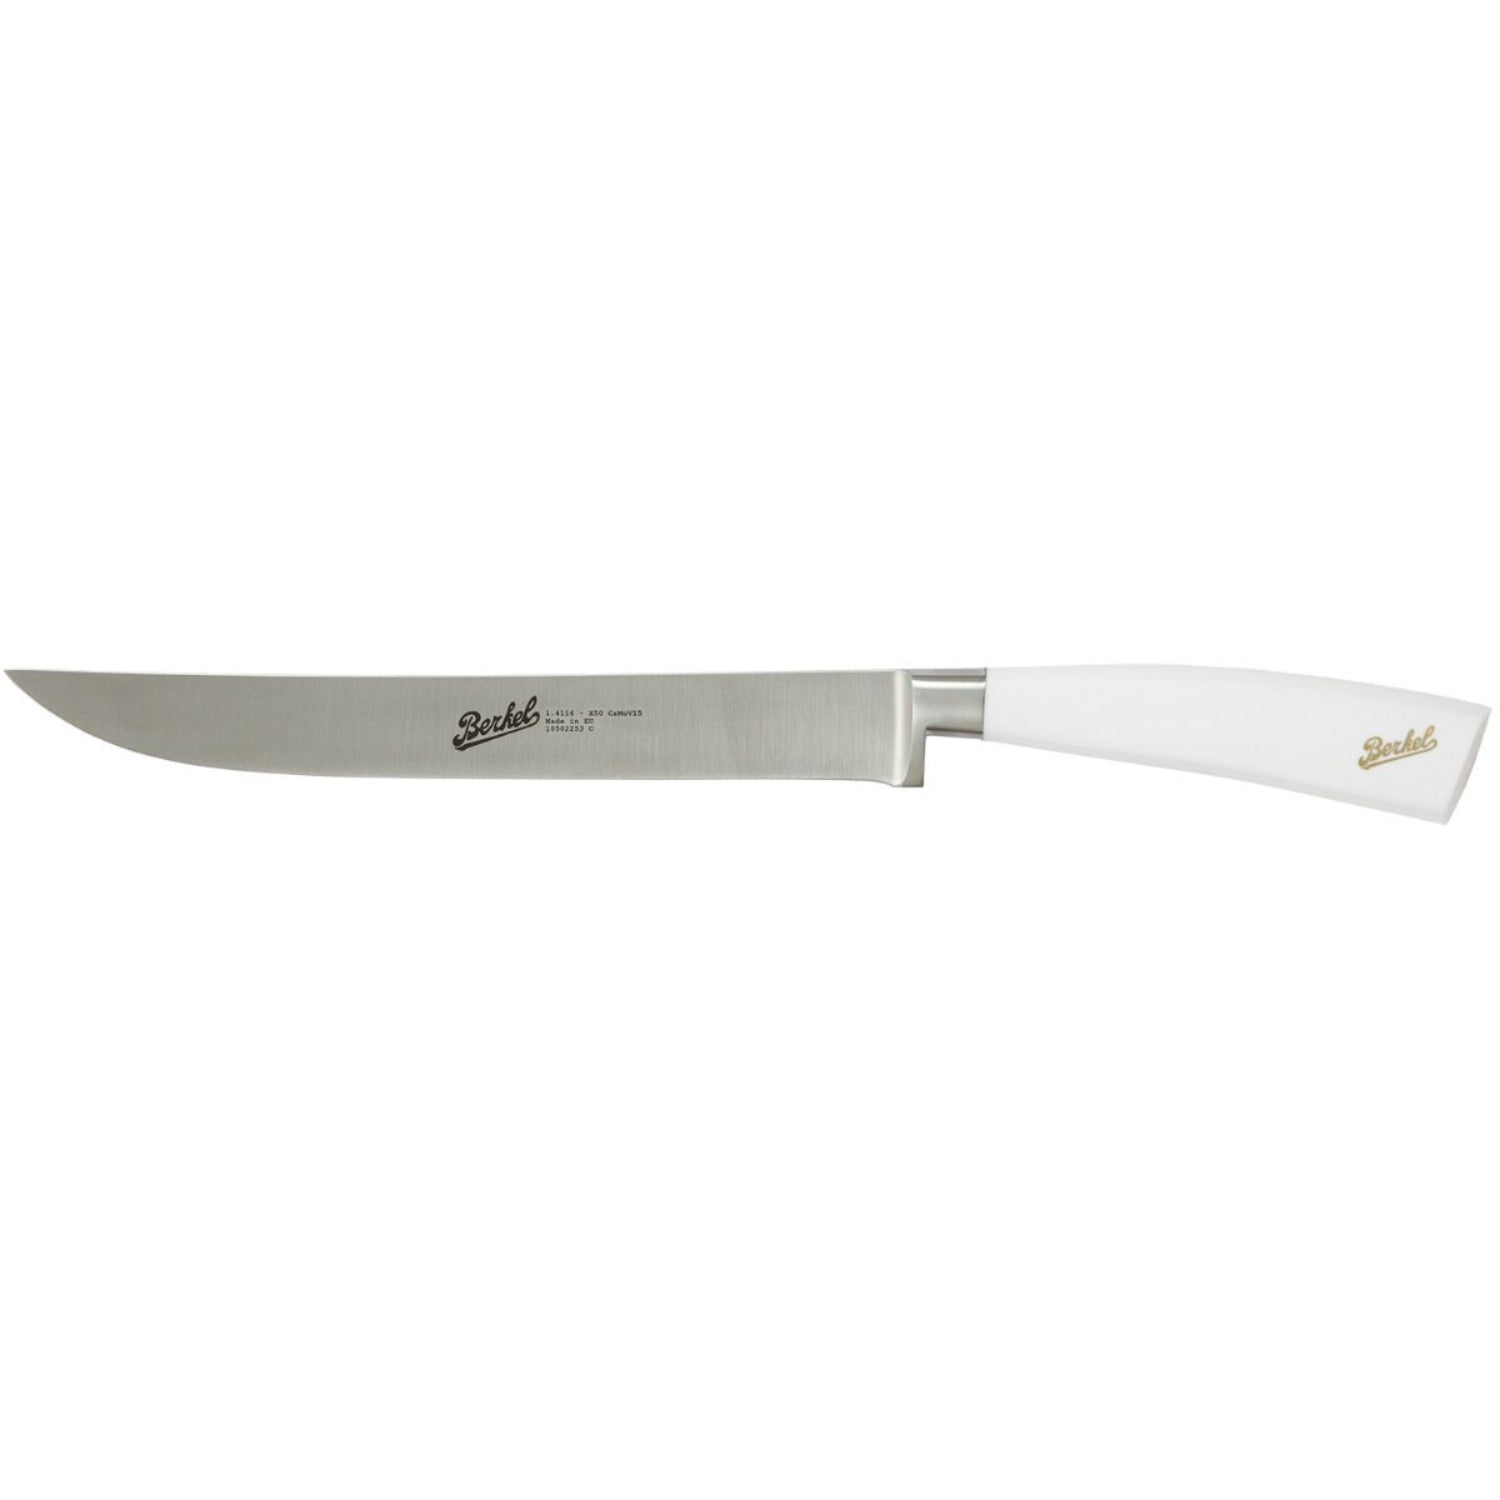 Berkel Elegance Roast knife cm 22 Steel handle